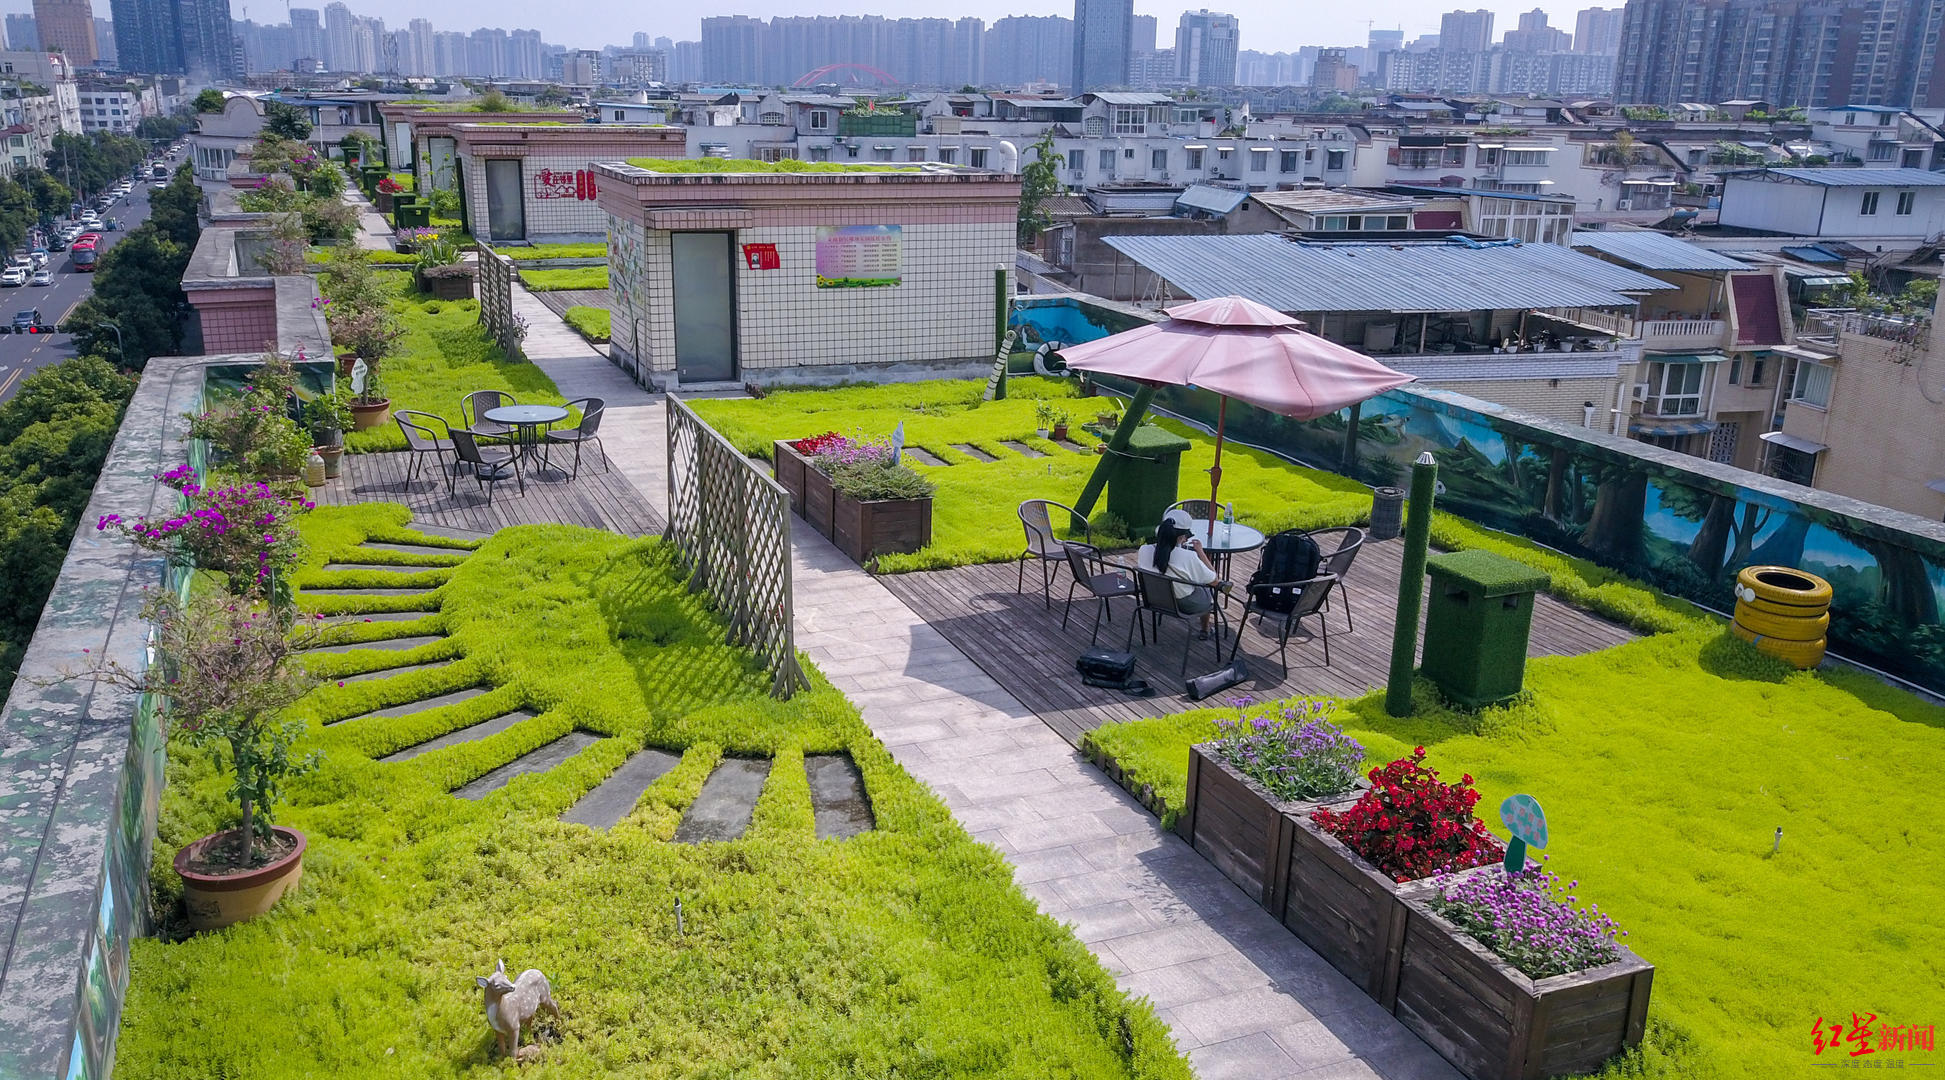 成都这个小区楼顶有个1100平米的共享“空中花园”社区居民实现了公园城市梦